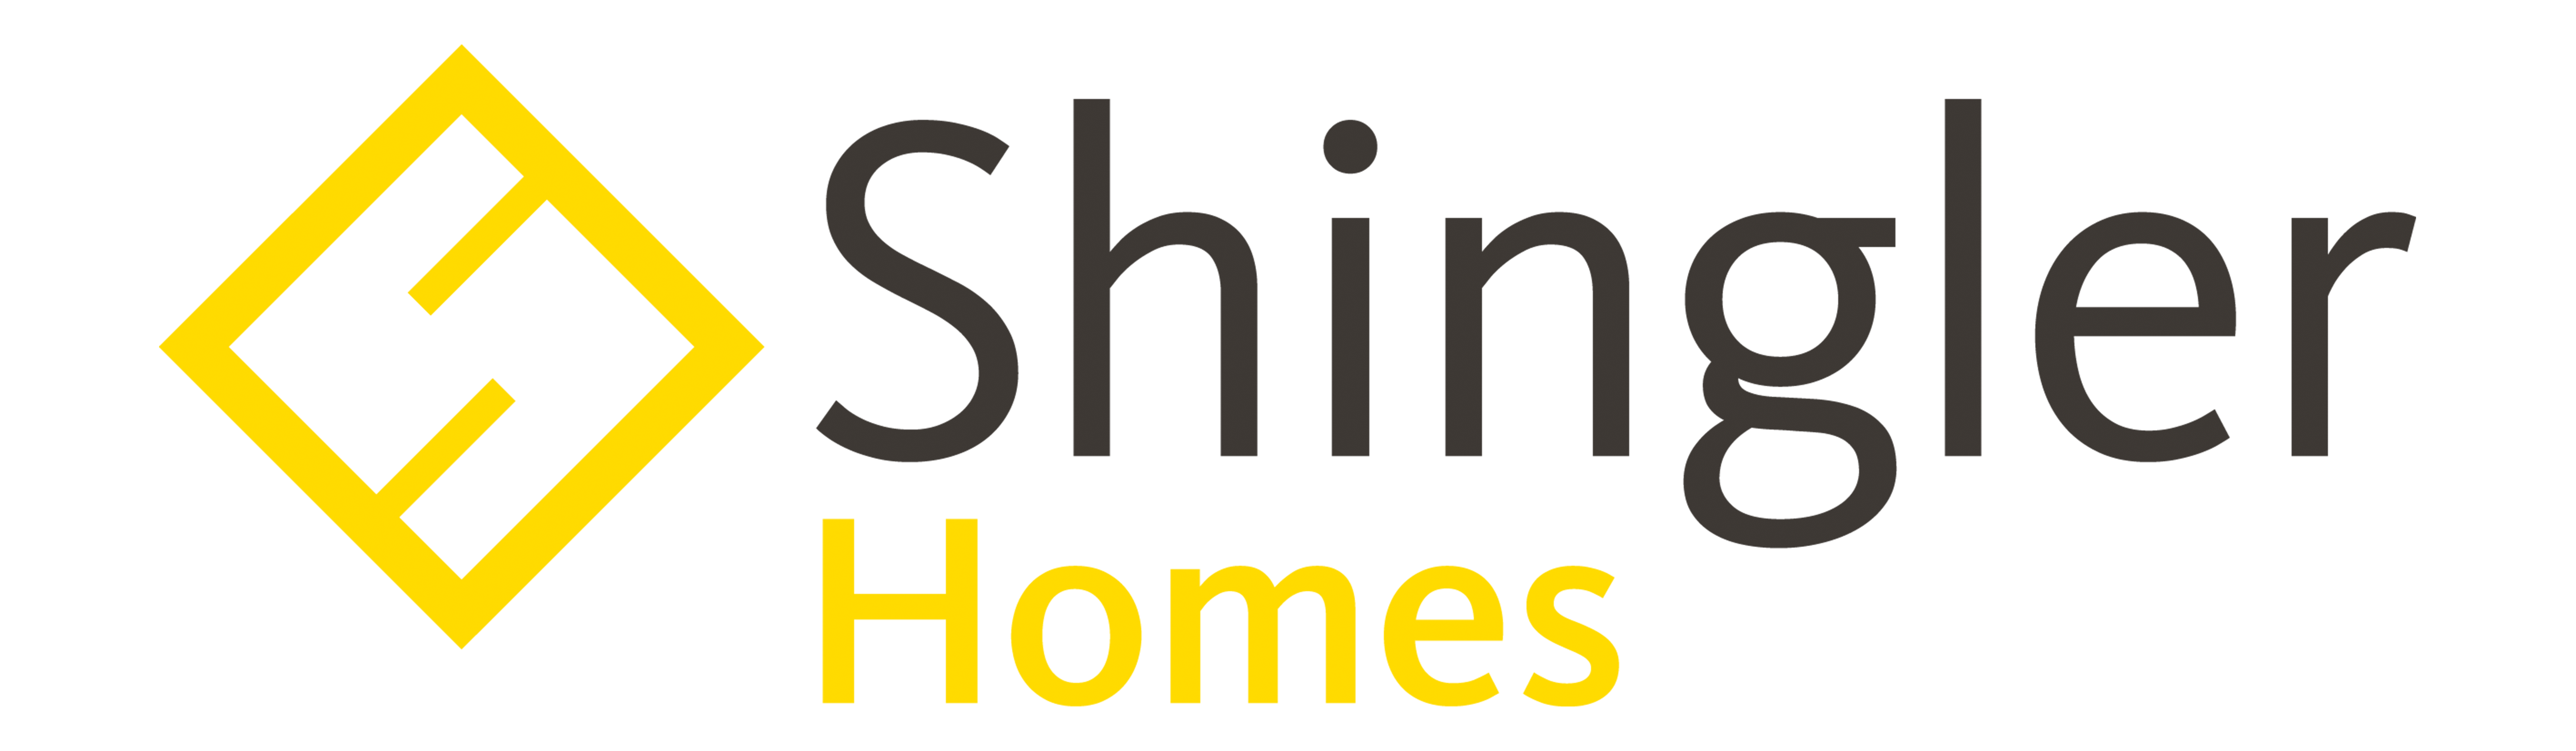 Shingler Homes